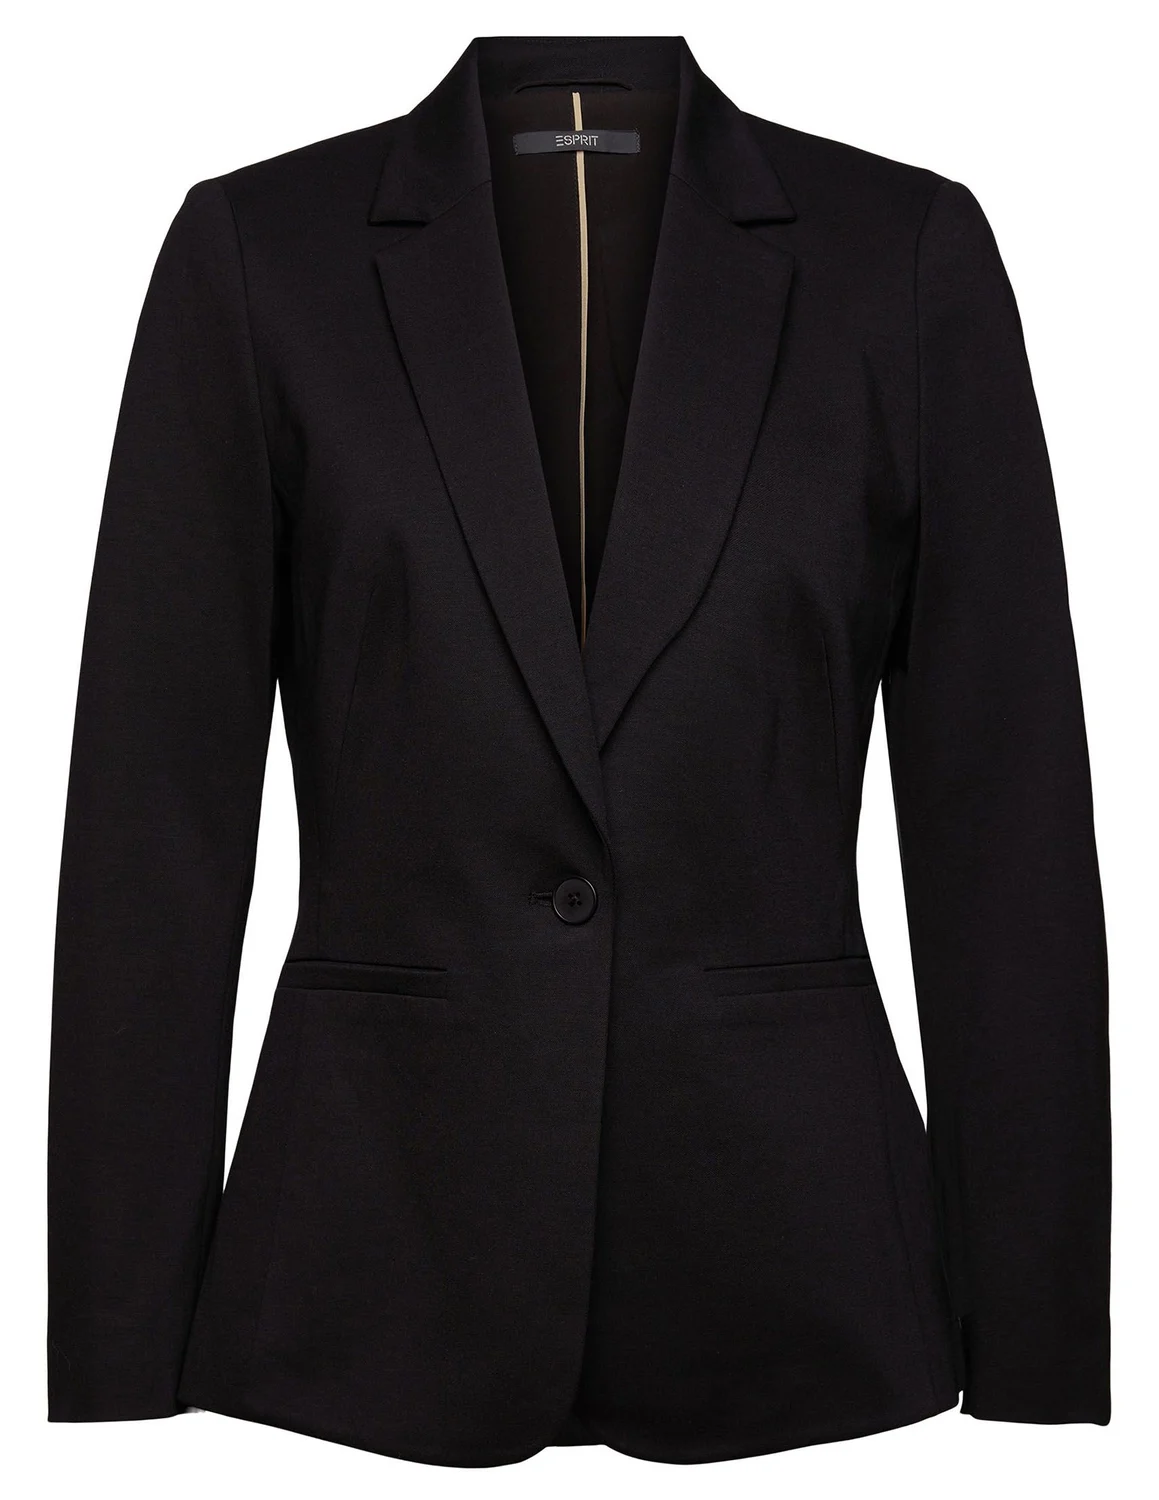 Dreigend Bewolkt Oordeel Esprit collection jersey blazer 992EO1G319 zwart kopen bij The Stone